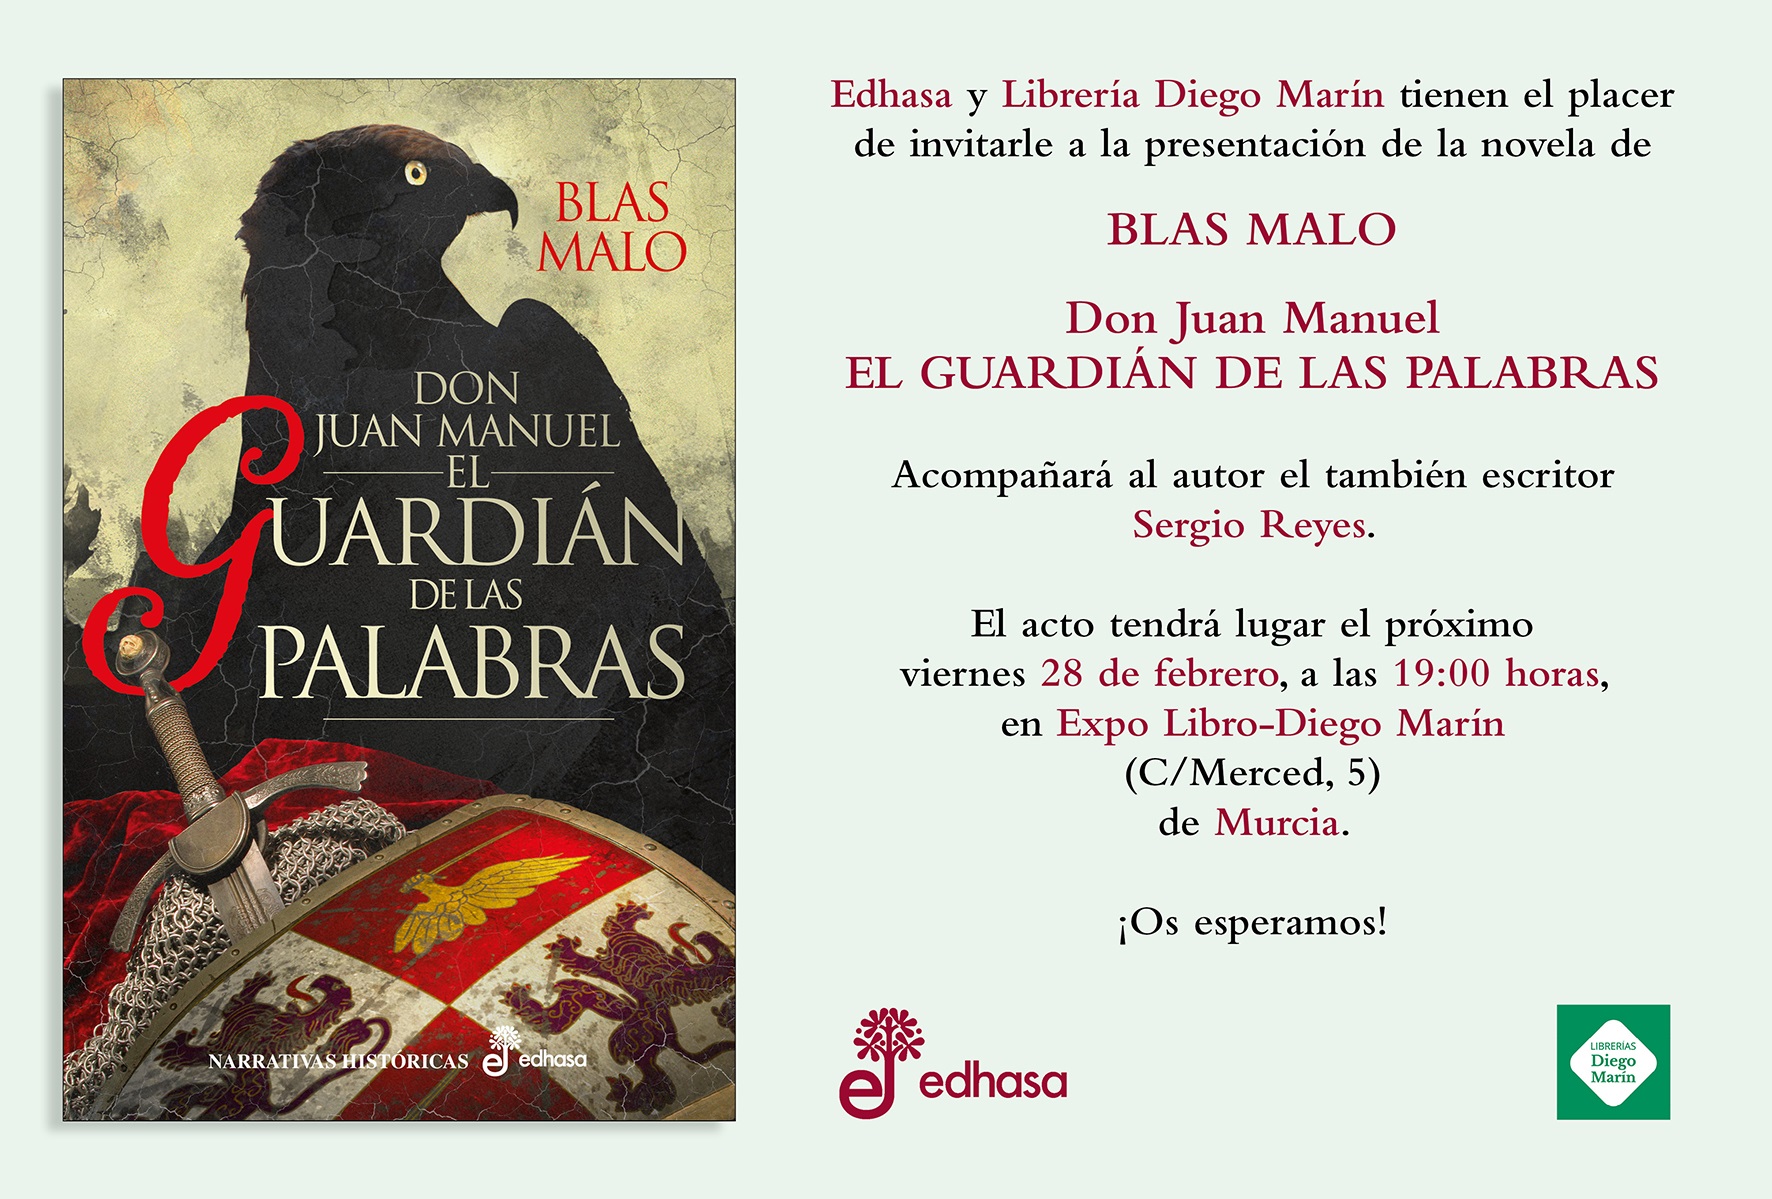 Presentando a un autor: Blas Malo y Don Juan Manuel – El guardián de las palabras